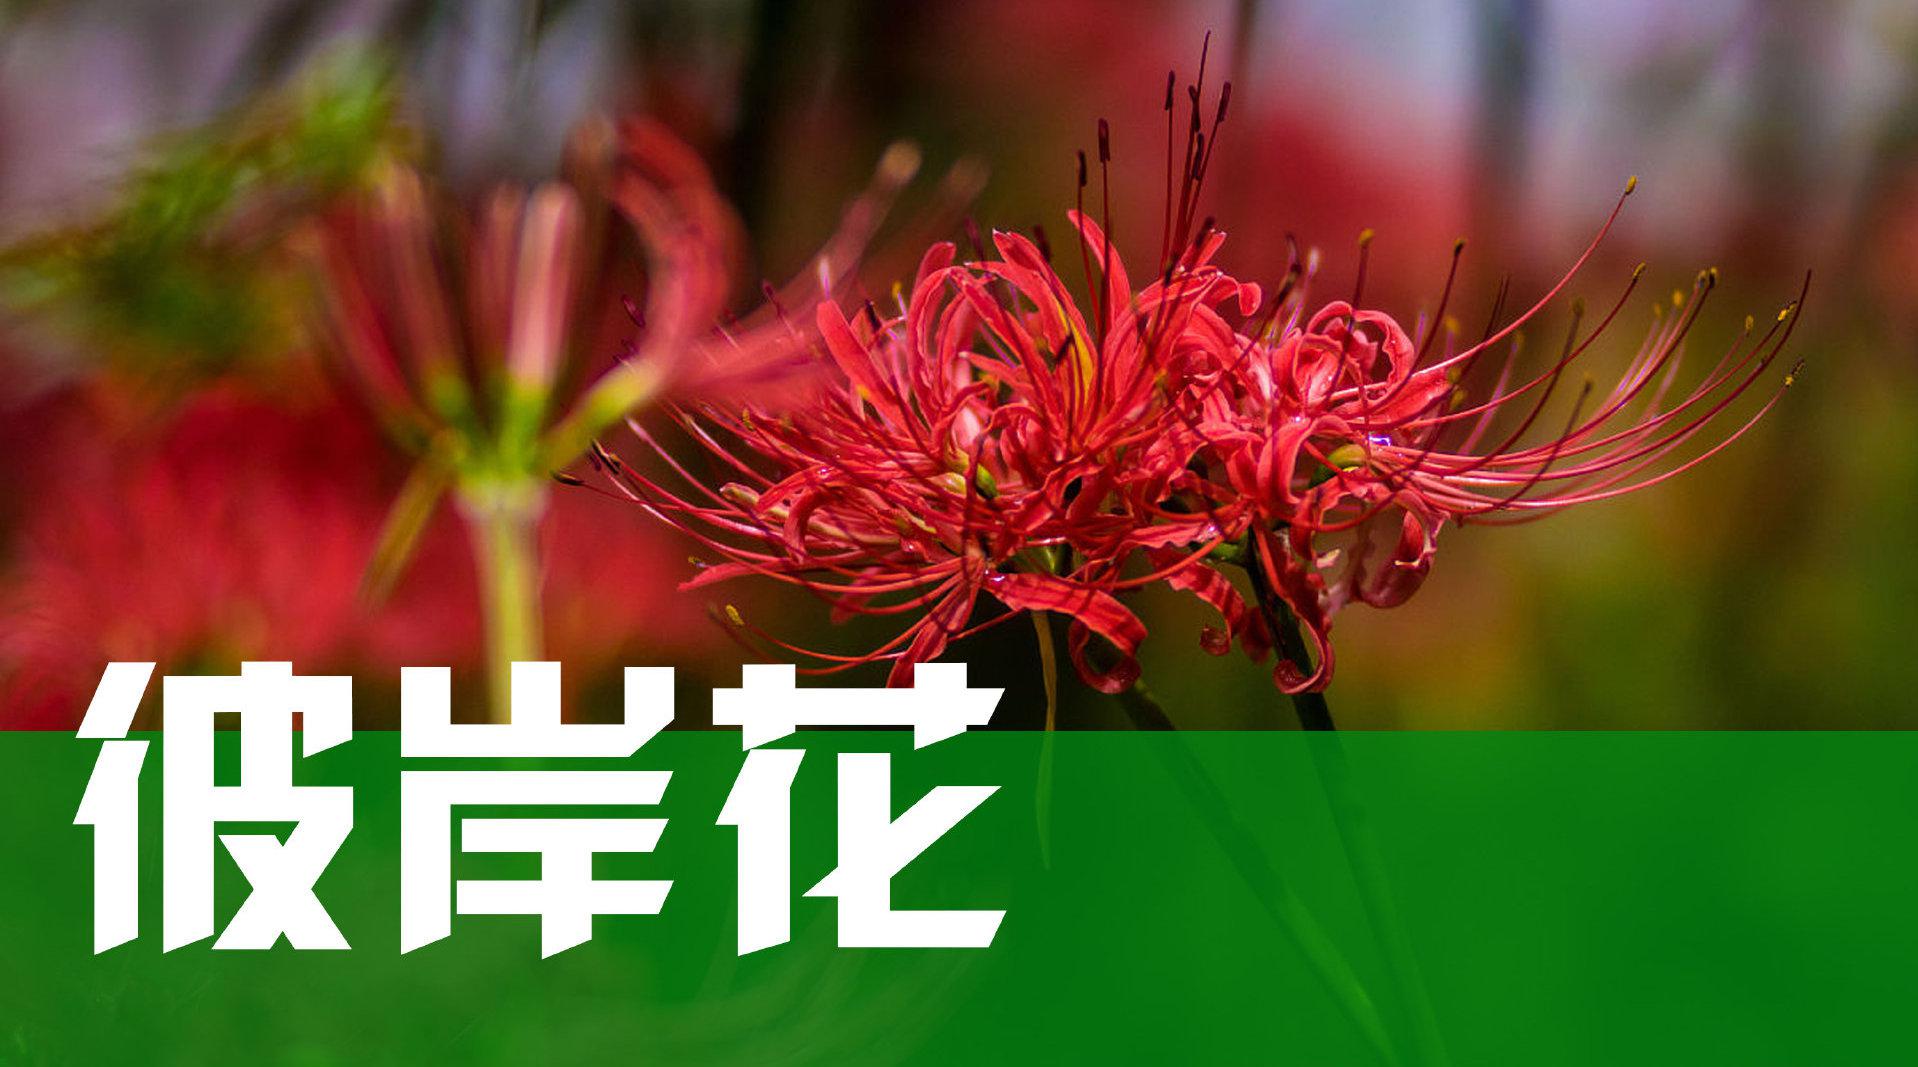 彼岸花，学名石蒜，有一个文艺的名字叫做曼珠沙华……